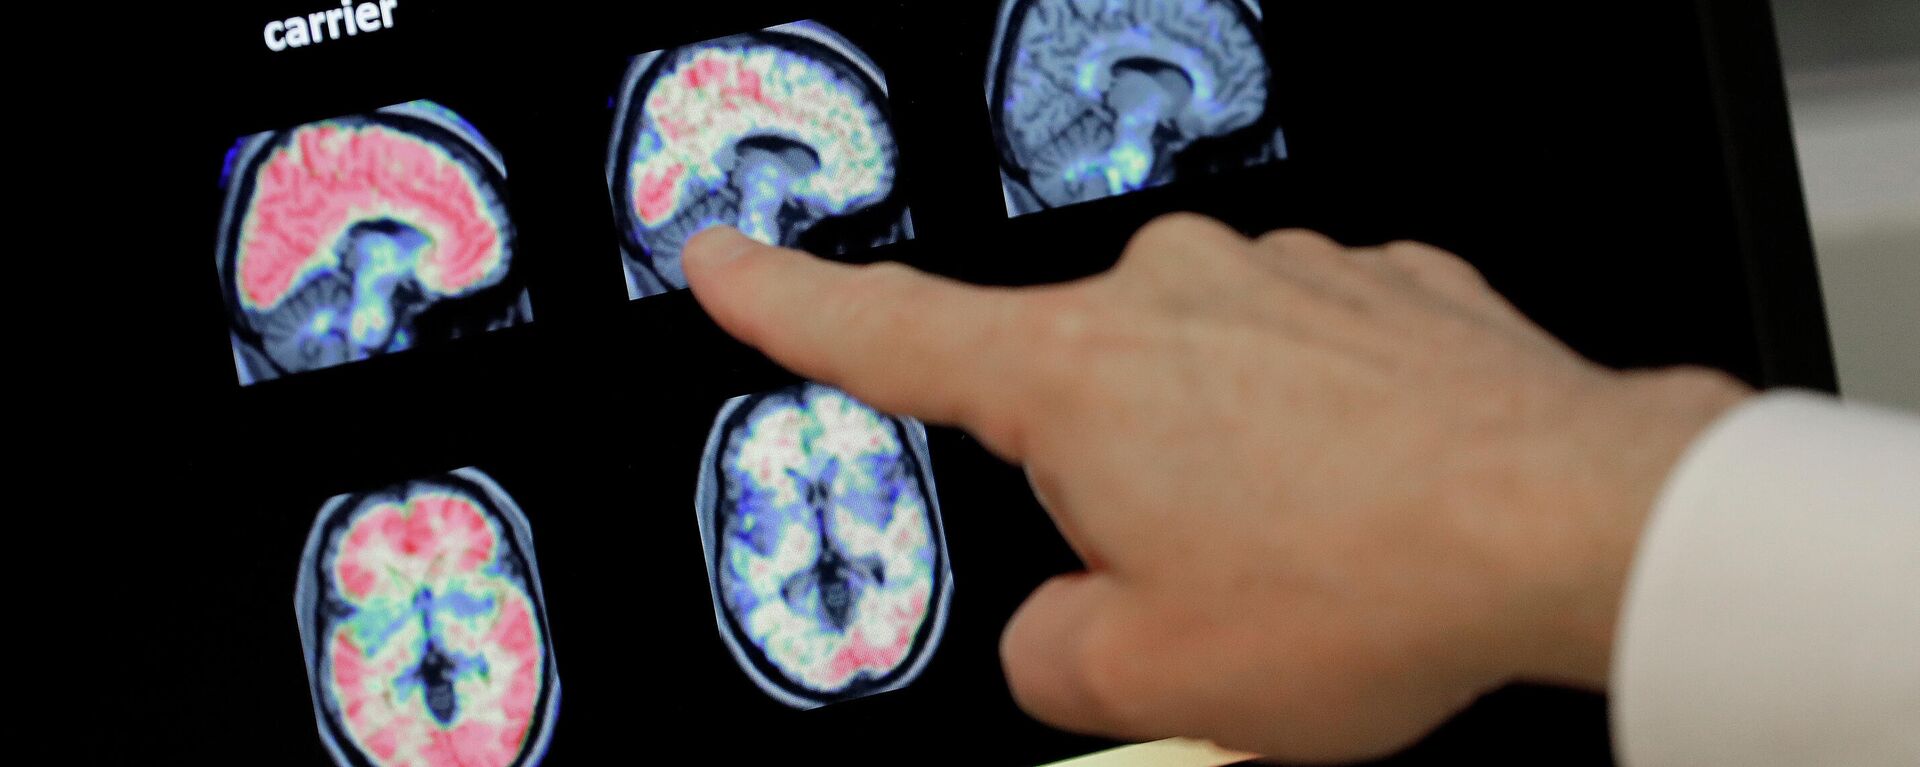 En esta foto de archivo del 14 de agosto de 2018, un médico observa una tomografía computarizada de un cerebro.  - Sputnik Mundo, 1920, 21.09.2021